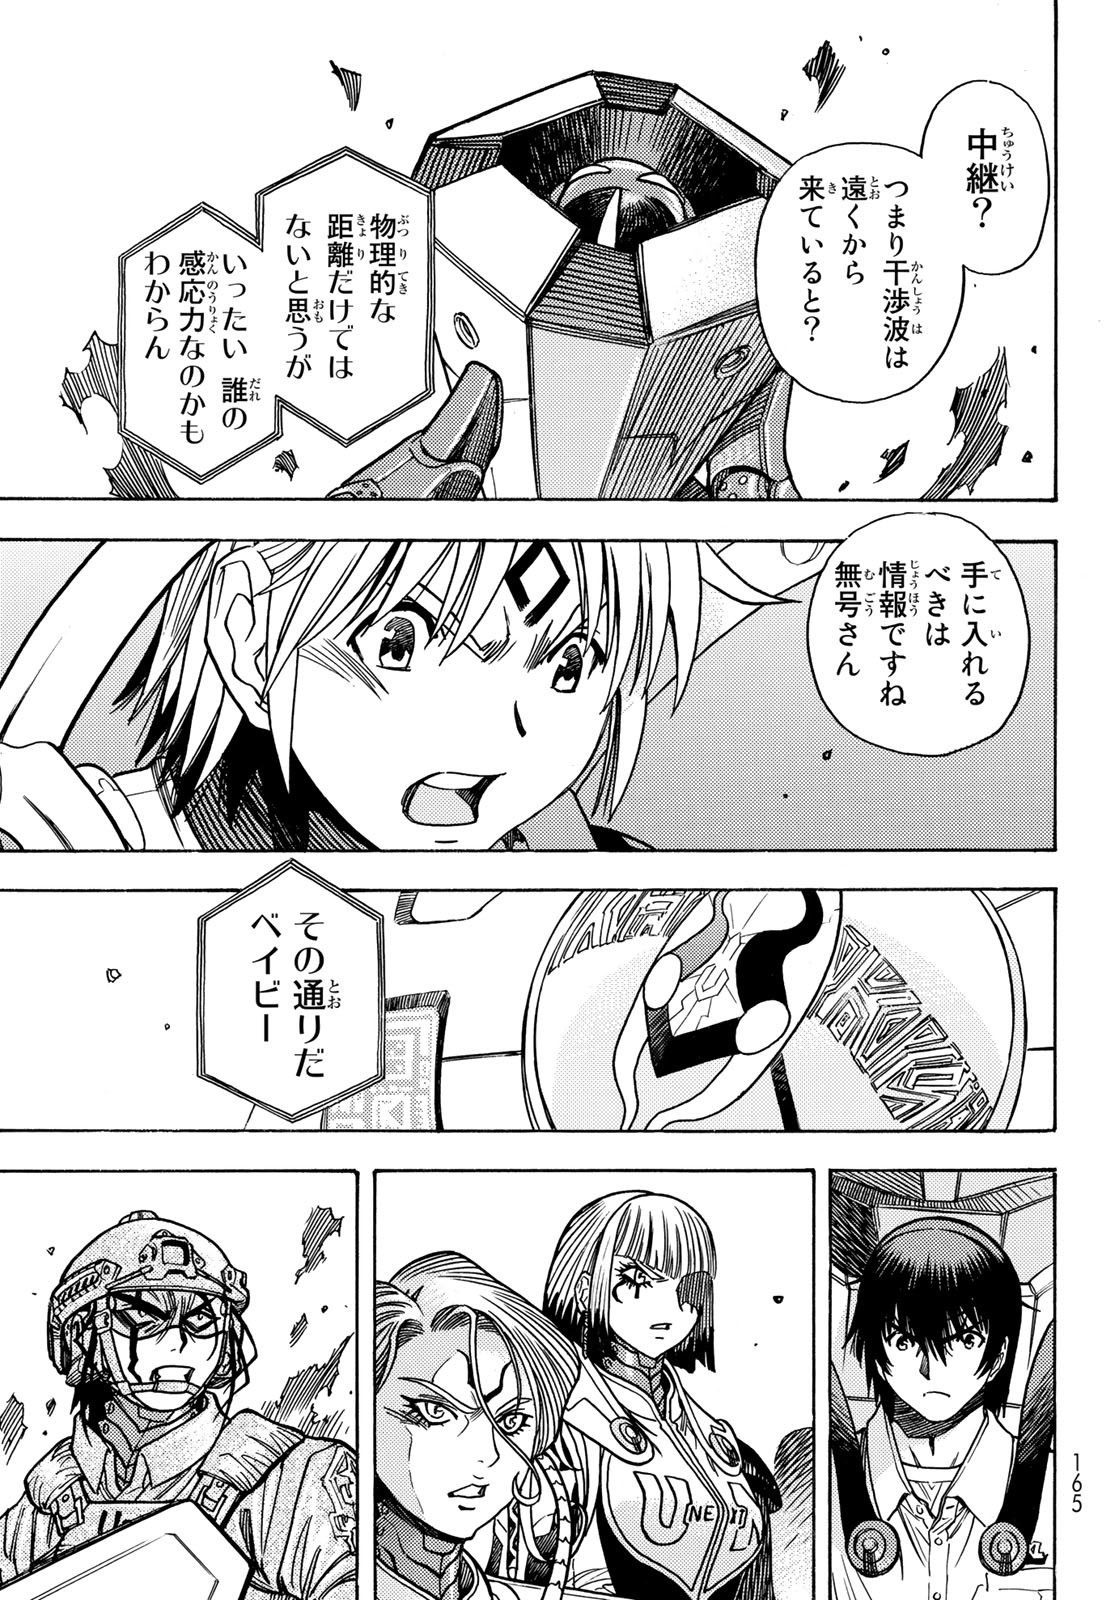 Mugou no Schnell Gear: Chikyuugai Kisouka AI - Chapter 48 - Page 11